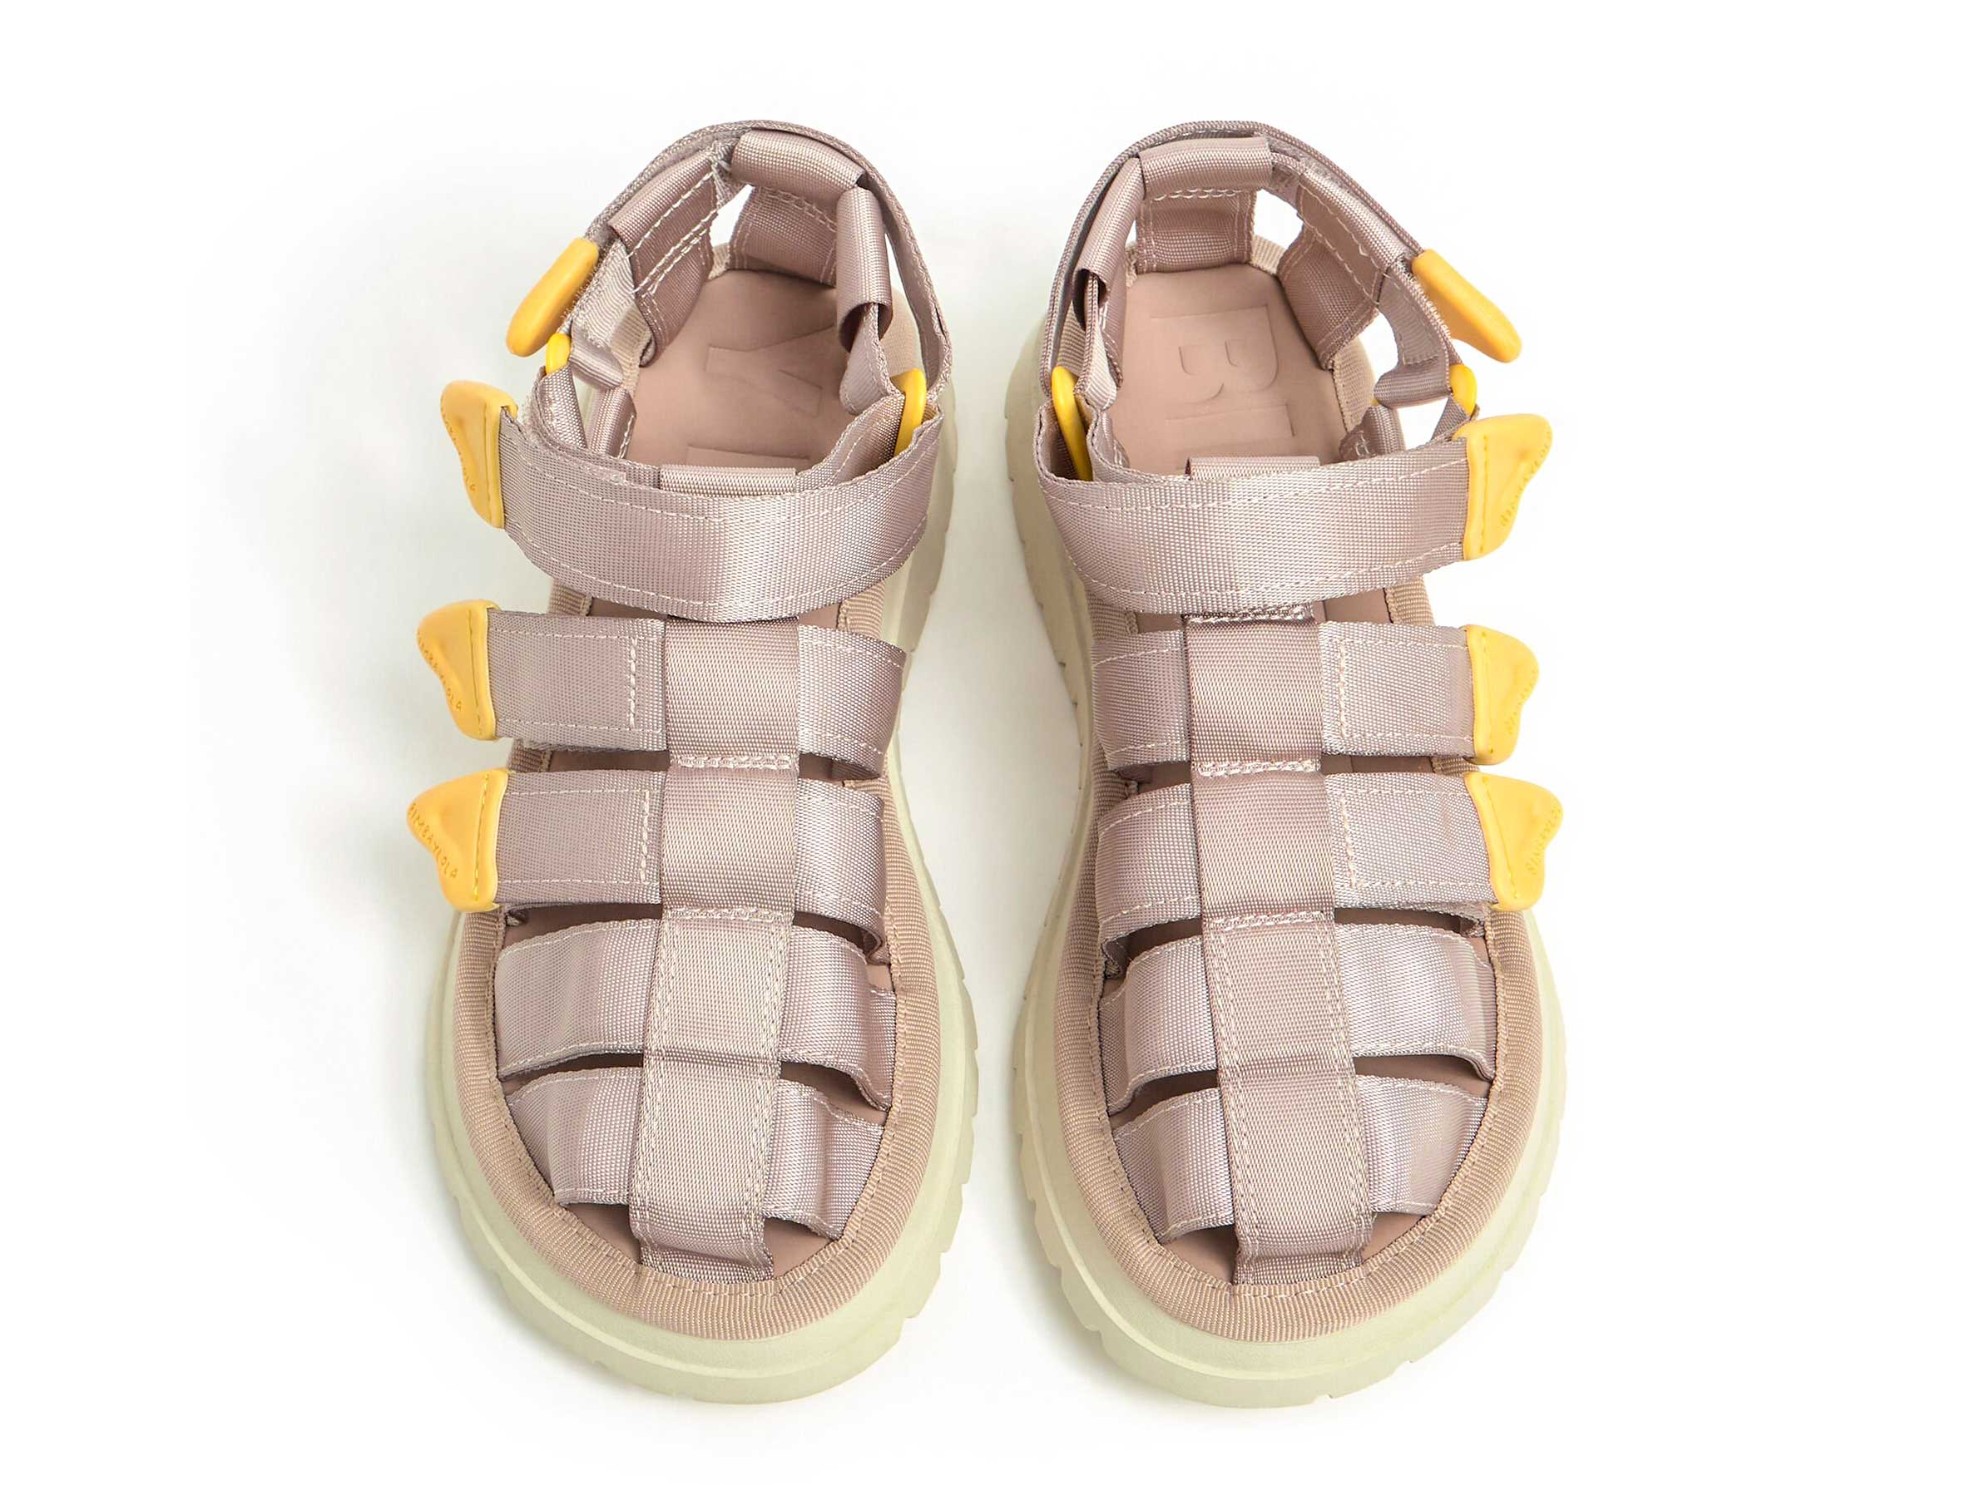 Las cangrejeras o franciscanas, ¿serán las sandalias favoritas del verano?